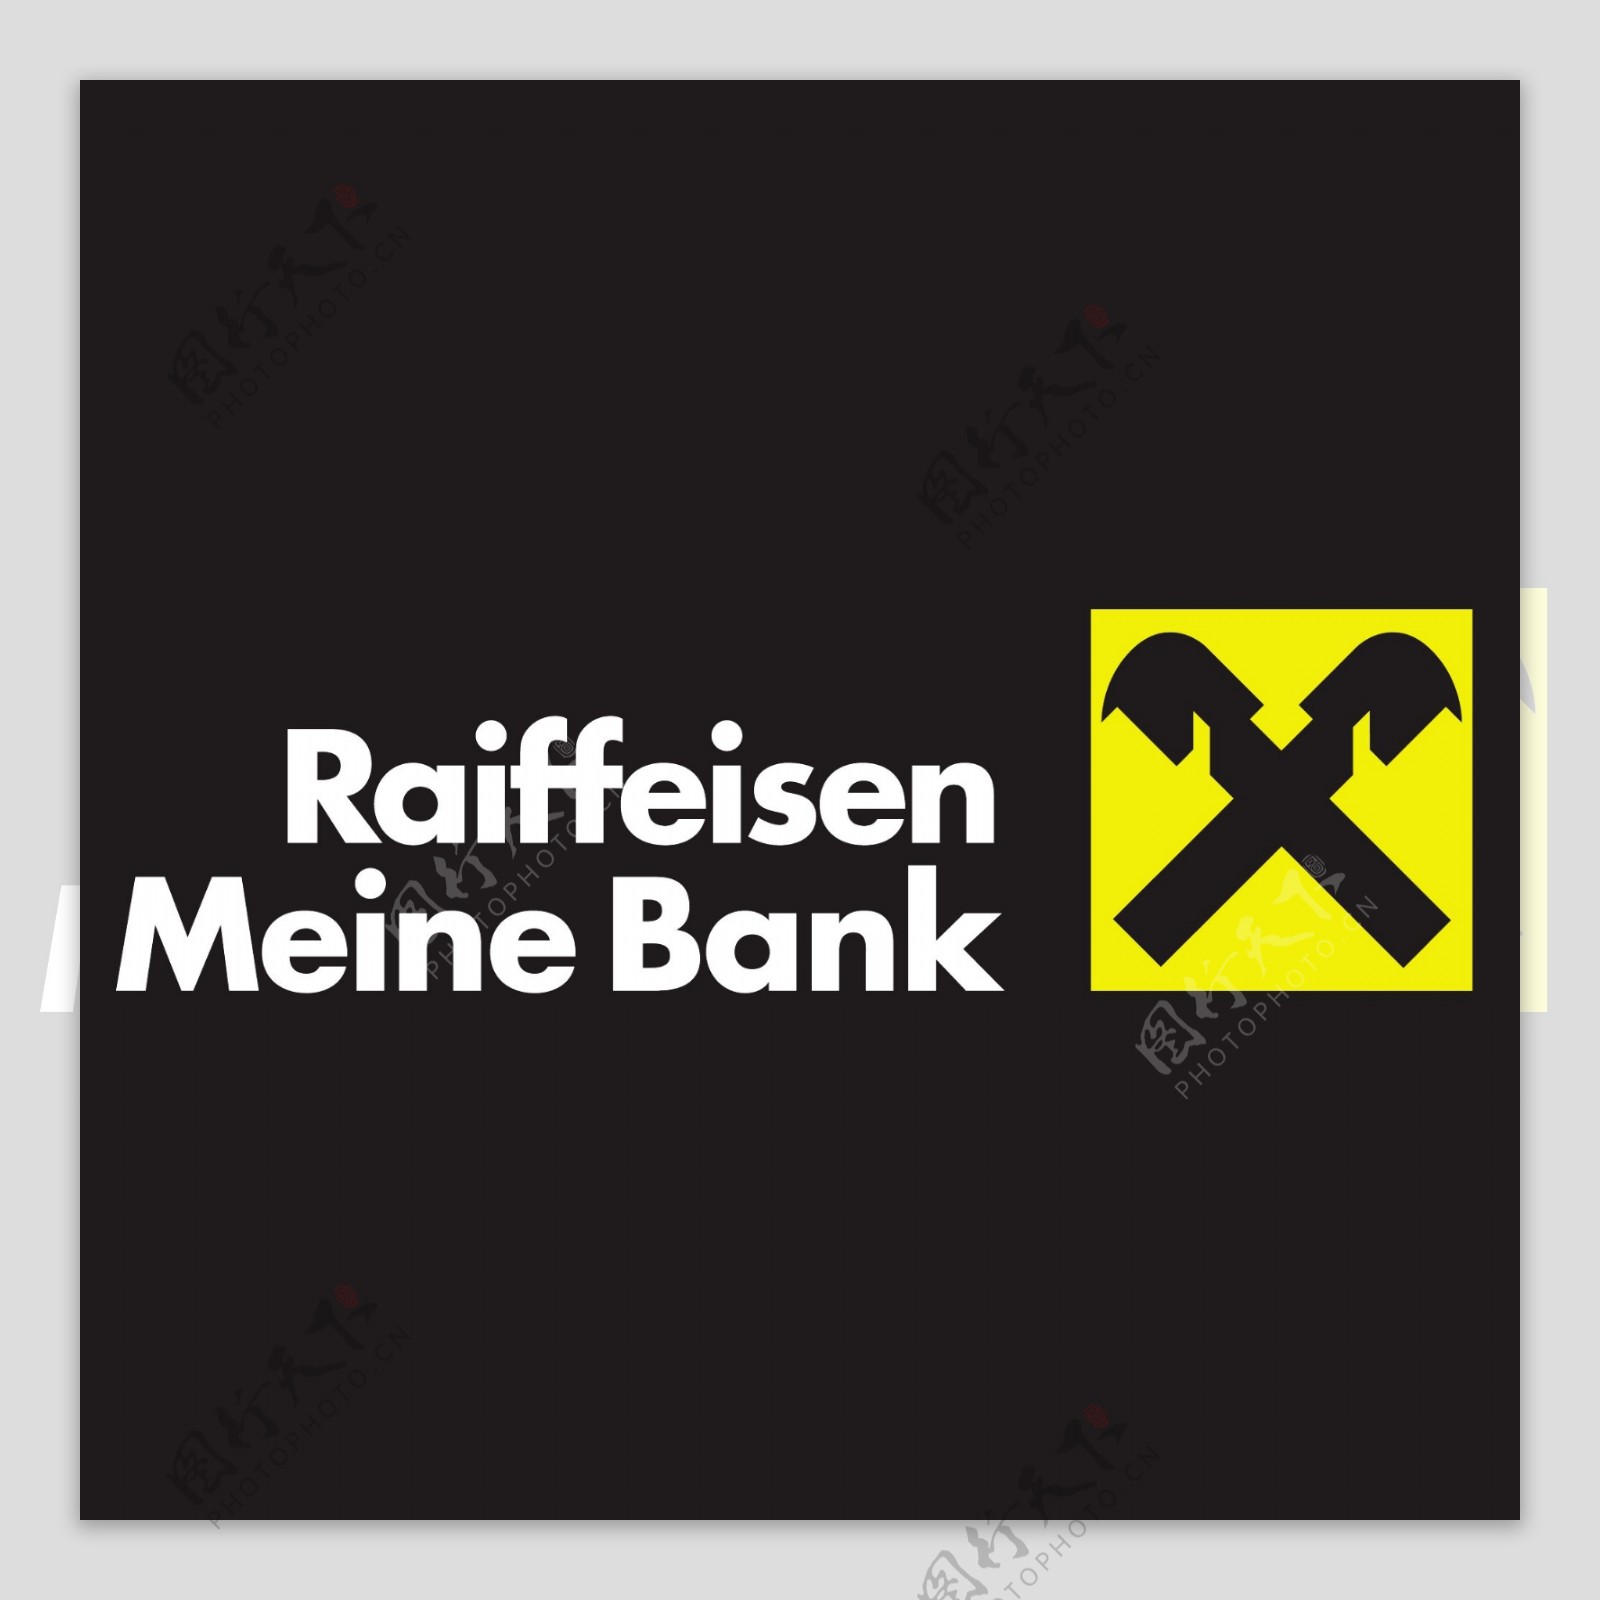 RaiffeisenMeineBanklogo设计欣赏RaiffeisenMeineBank银行业LOGO下载标志设计欣赏